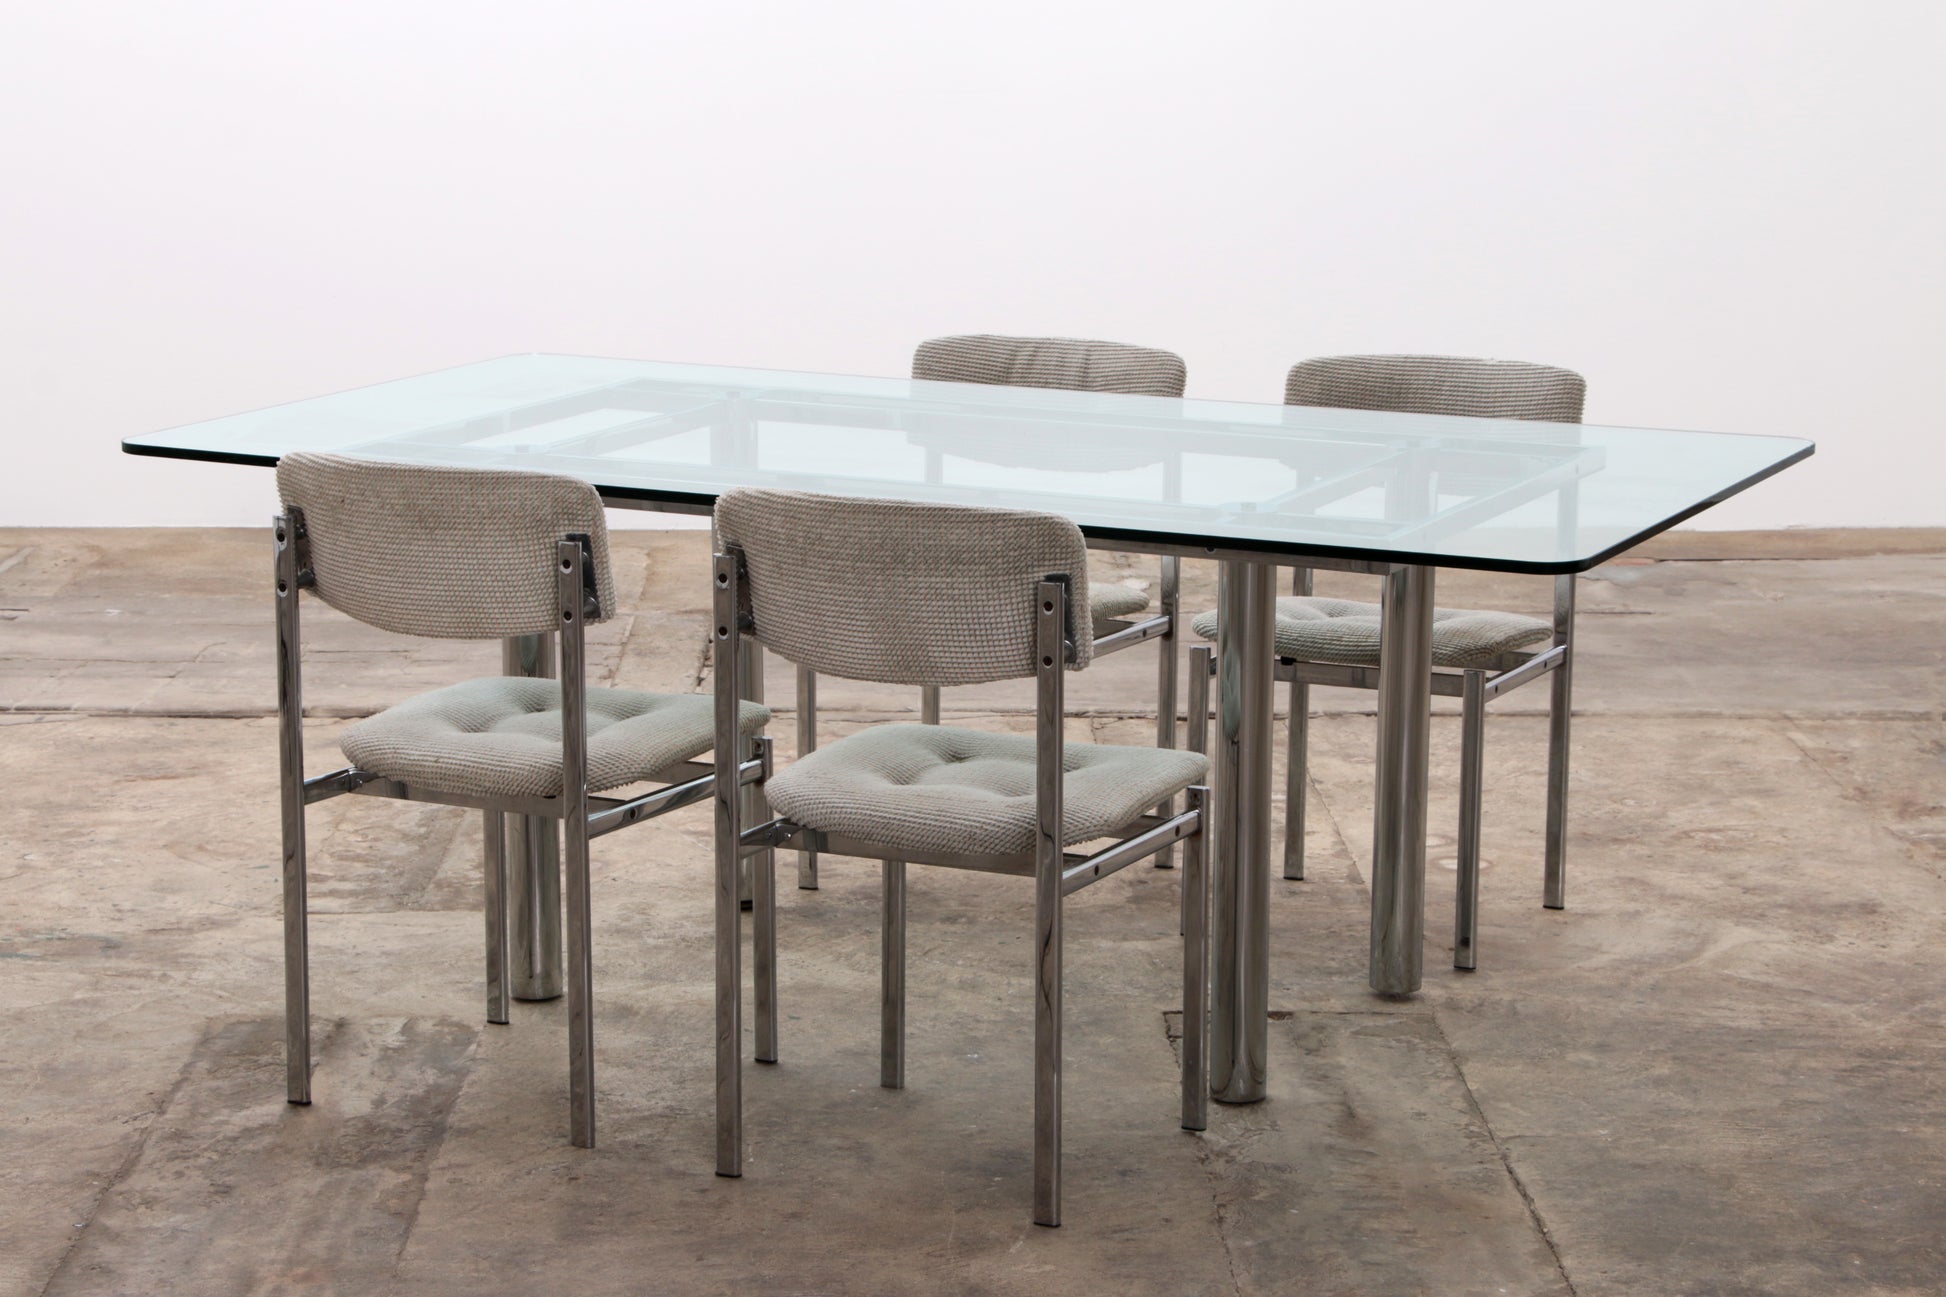 Rechthoekige Eettafel "Andrè" met Stoelen - Designklassieker uit de Jaren 60